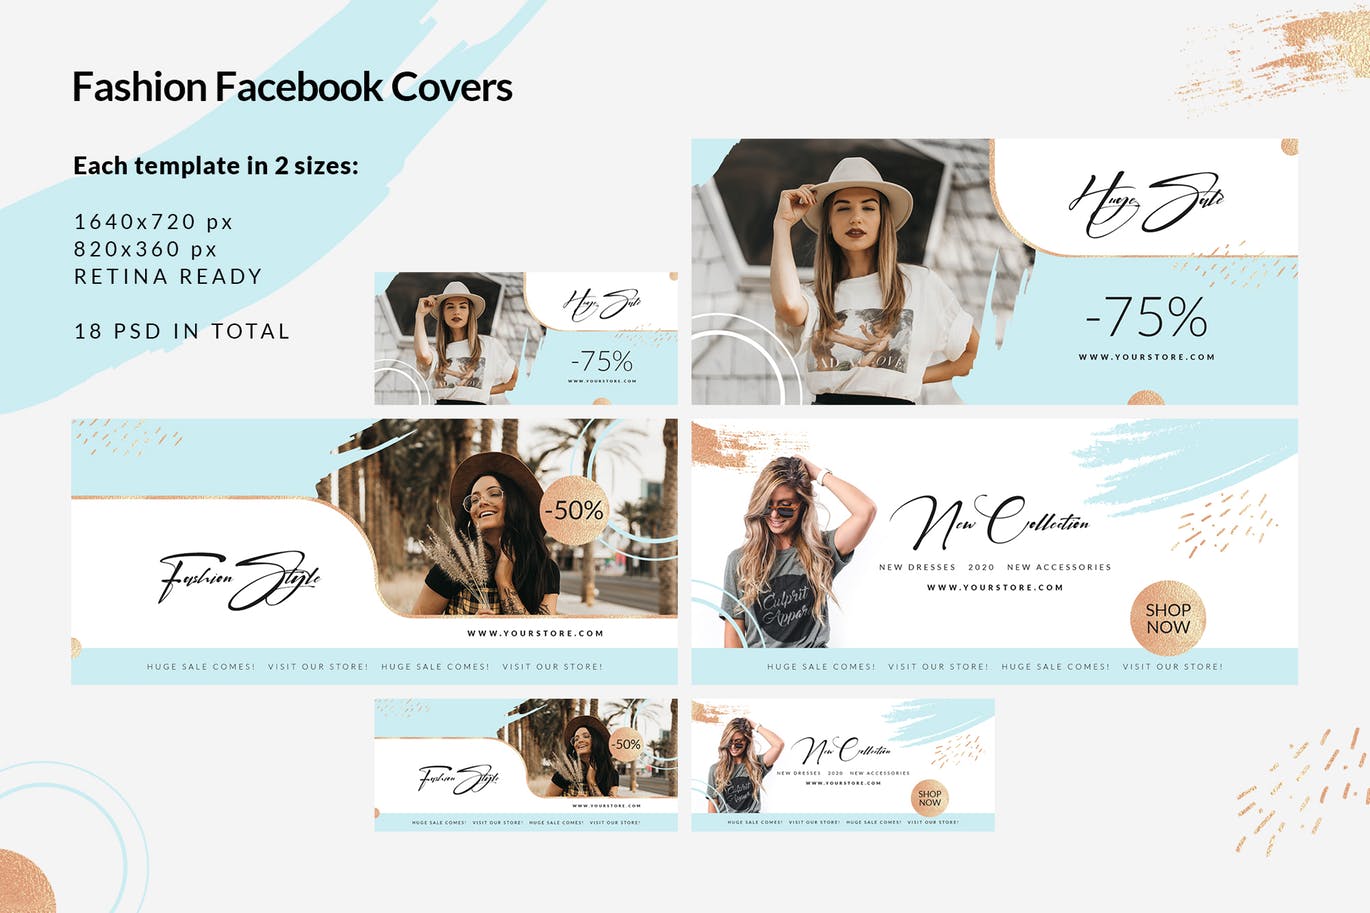 时尚品牌打折促销Facebook封面设计模板16图库精选 Fashion Facebook Covers插图(1)